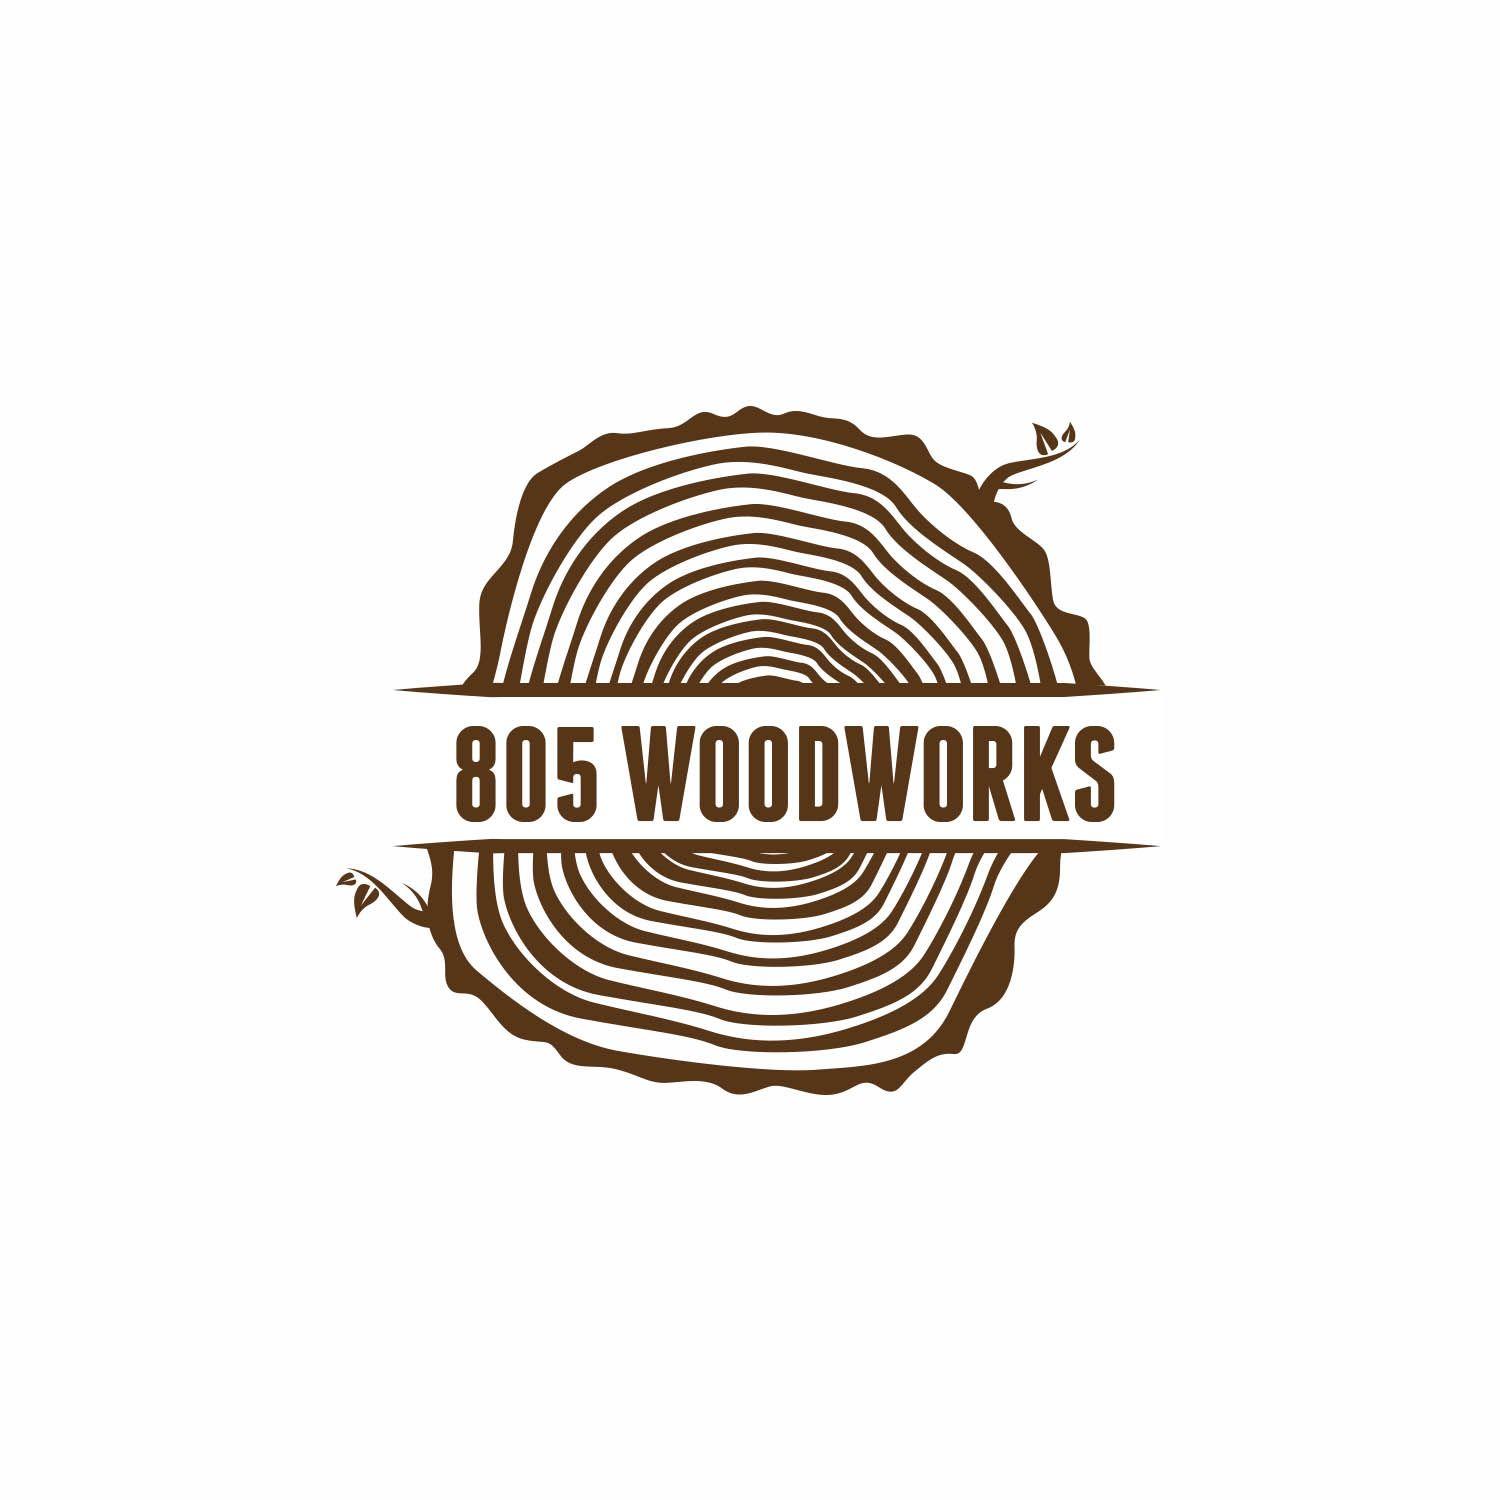 Woodworking Logo - Bold, Upmarket, Woodworking Logo Design for 805 Woodworks by Design ...